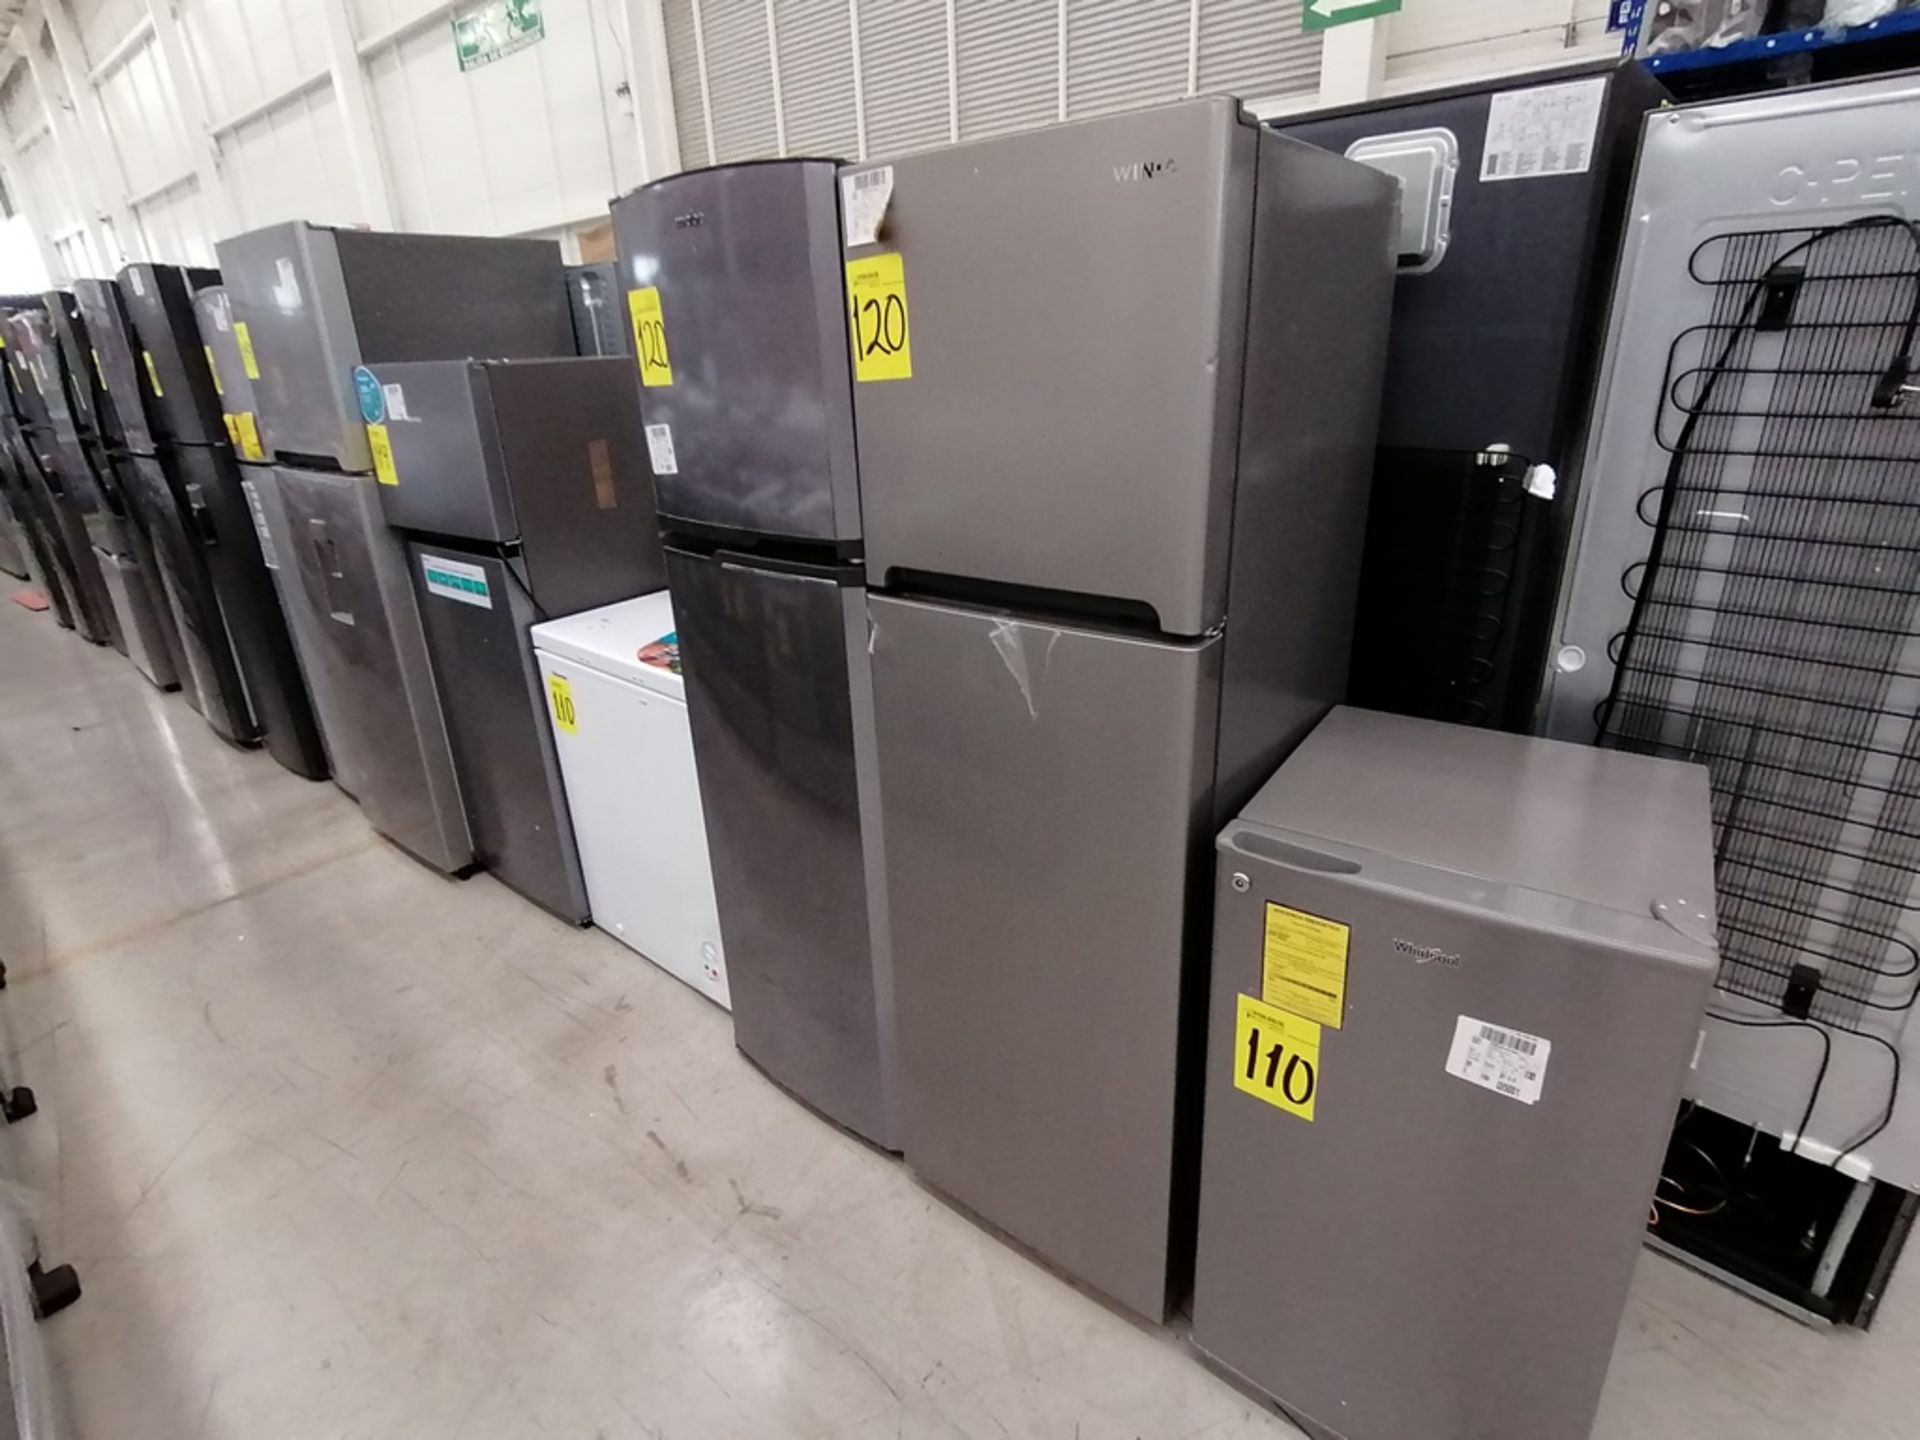 Lote de 2 refrigeradores incluye: 1 Refrigerador, Marca Mabe, Modelo RMA1025VNX, Serie 2110B623189,